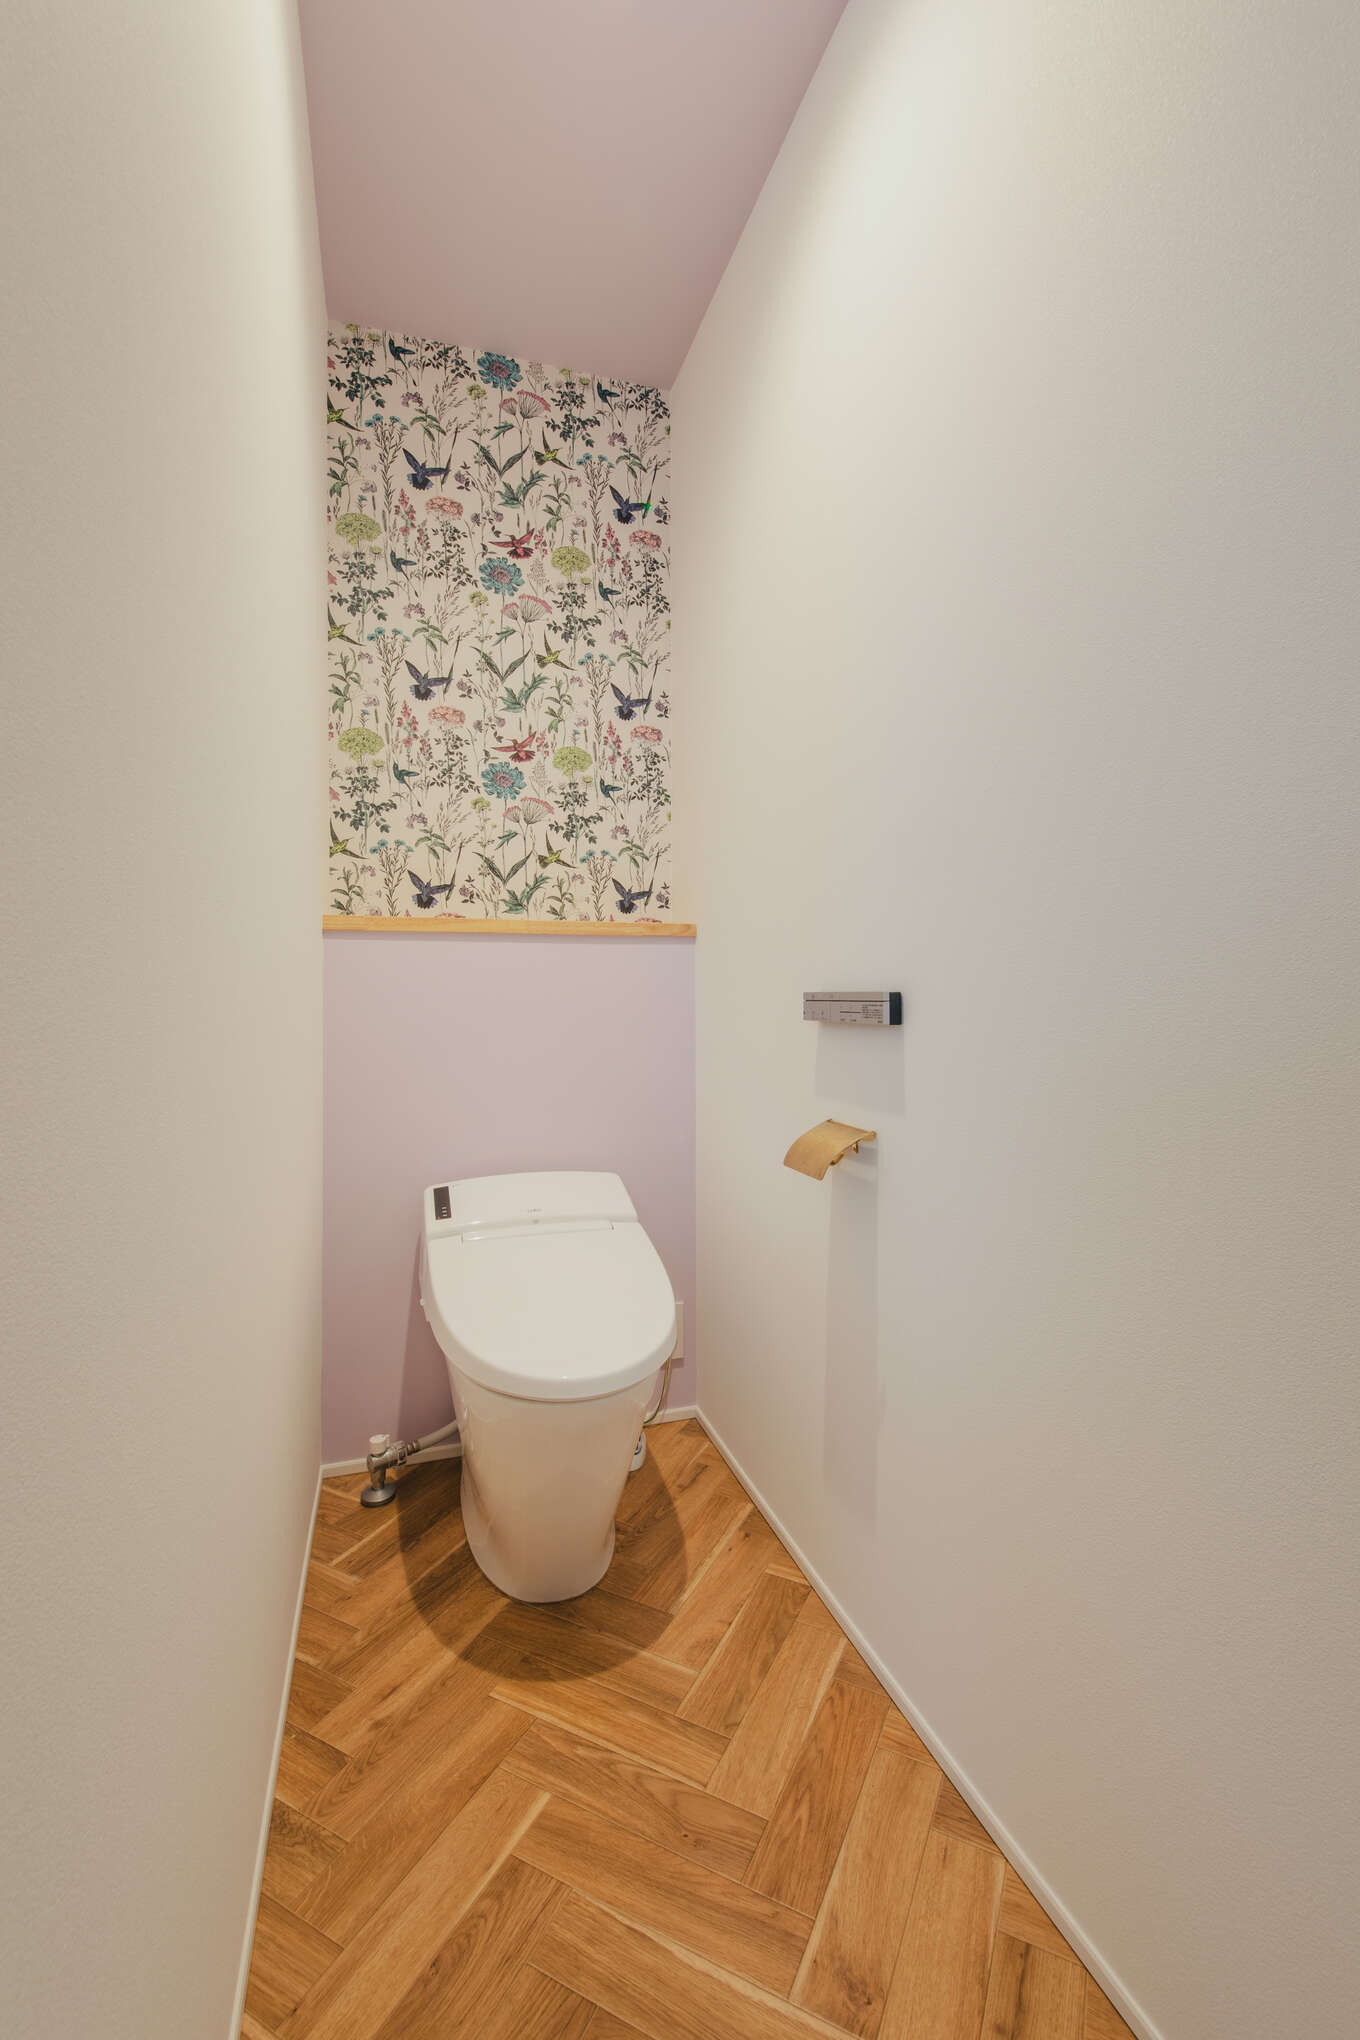 ボタニカルな壁紙とやさしい色合いのトイレ